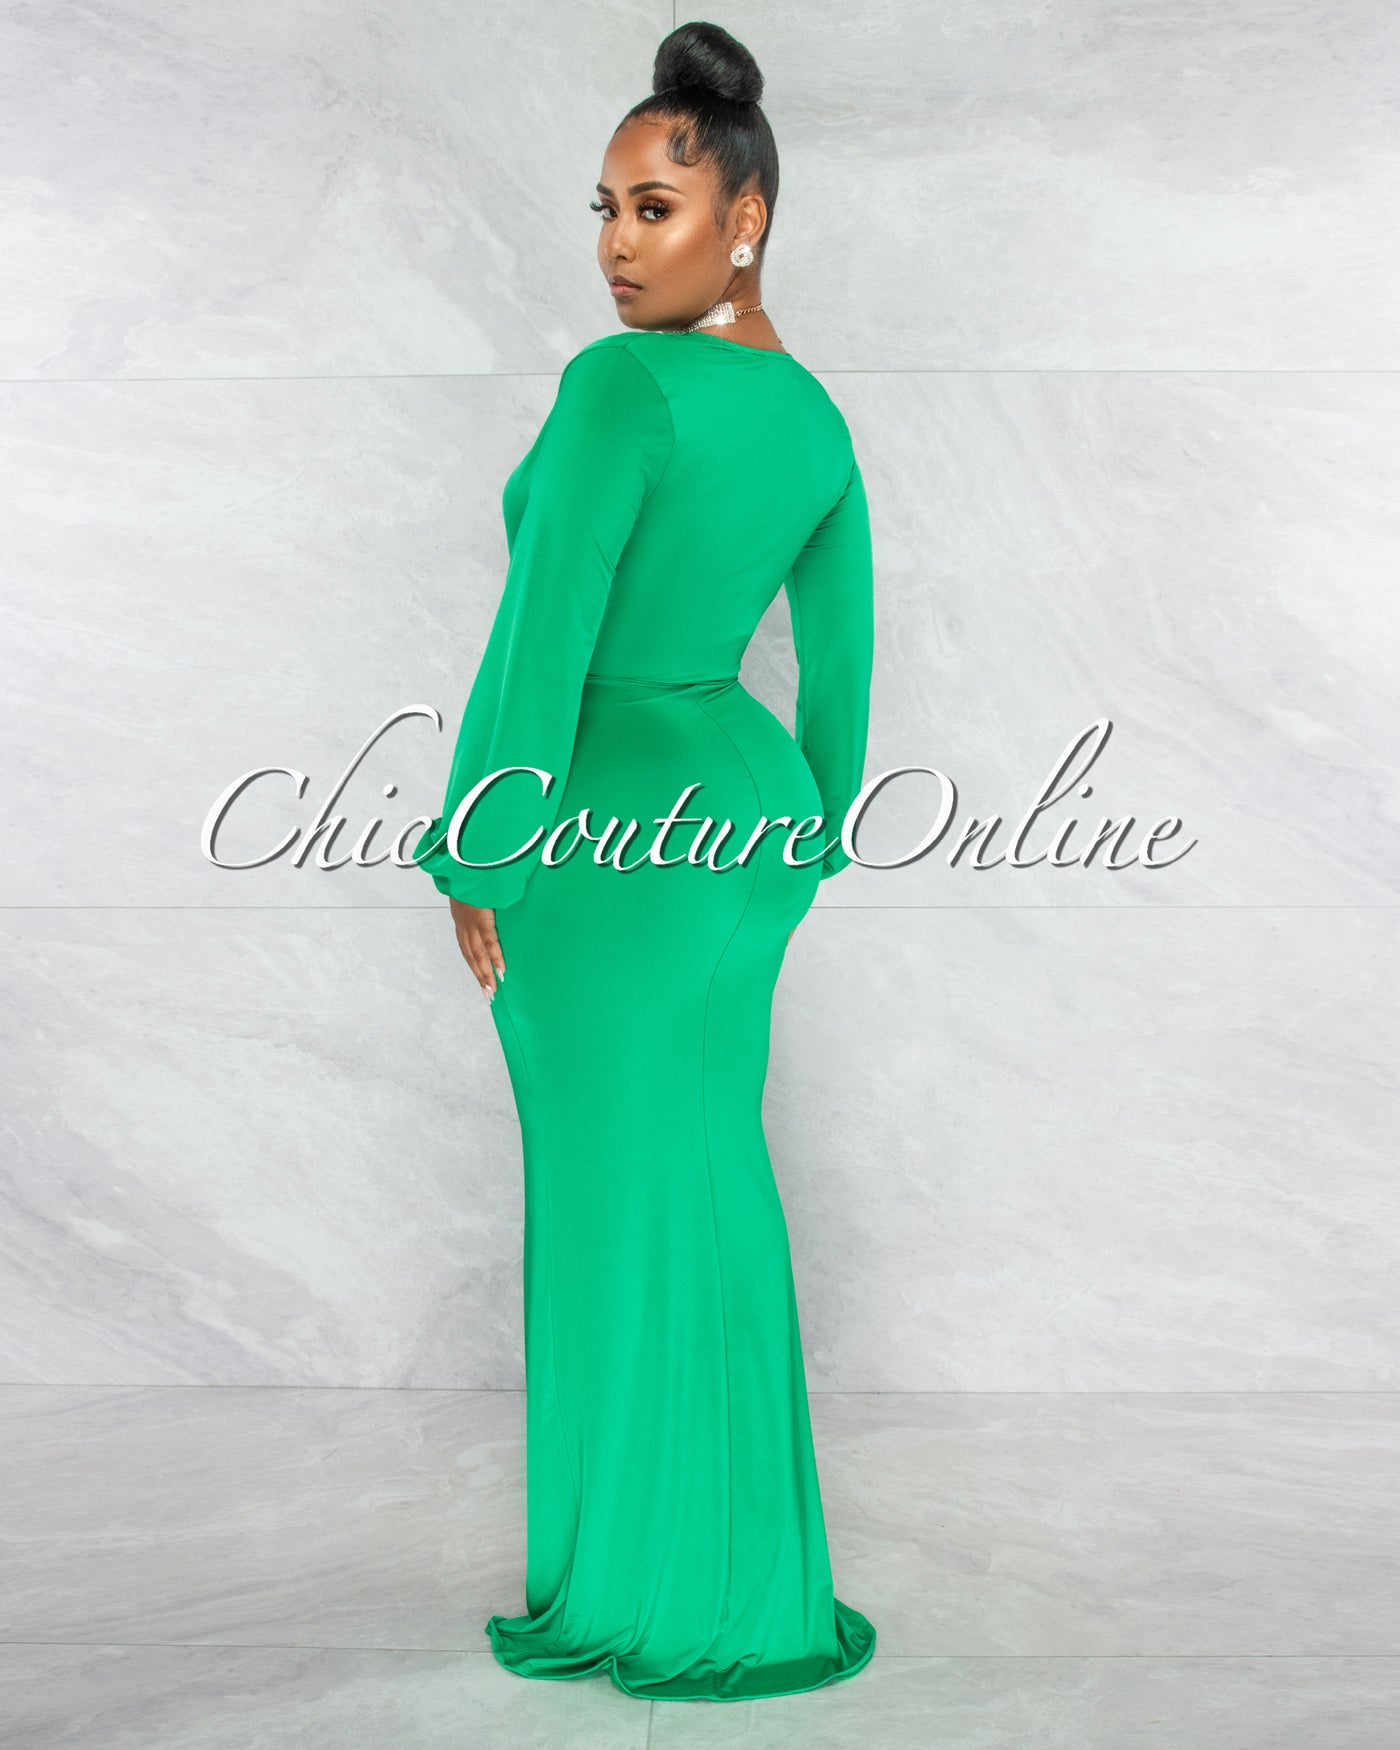 Solada Green V-Neck Long Sleeves Front Draped Maxi Dress